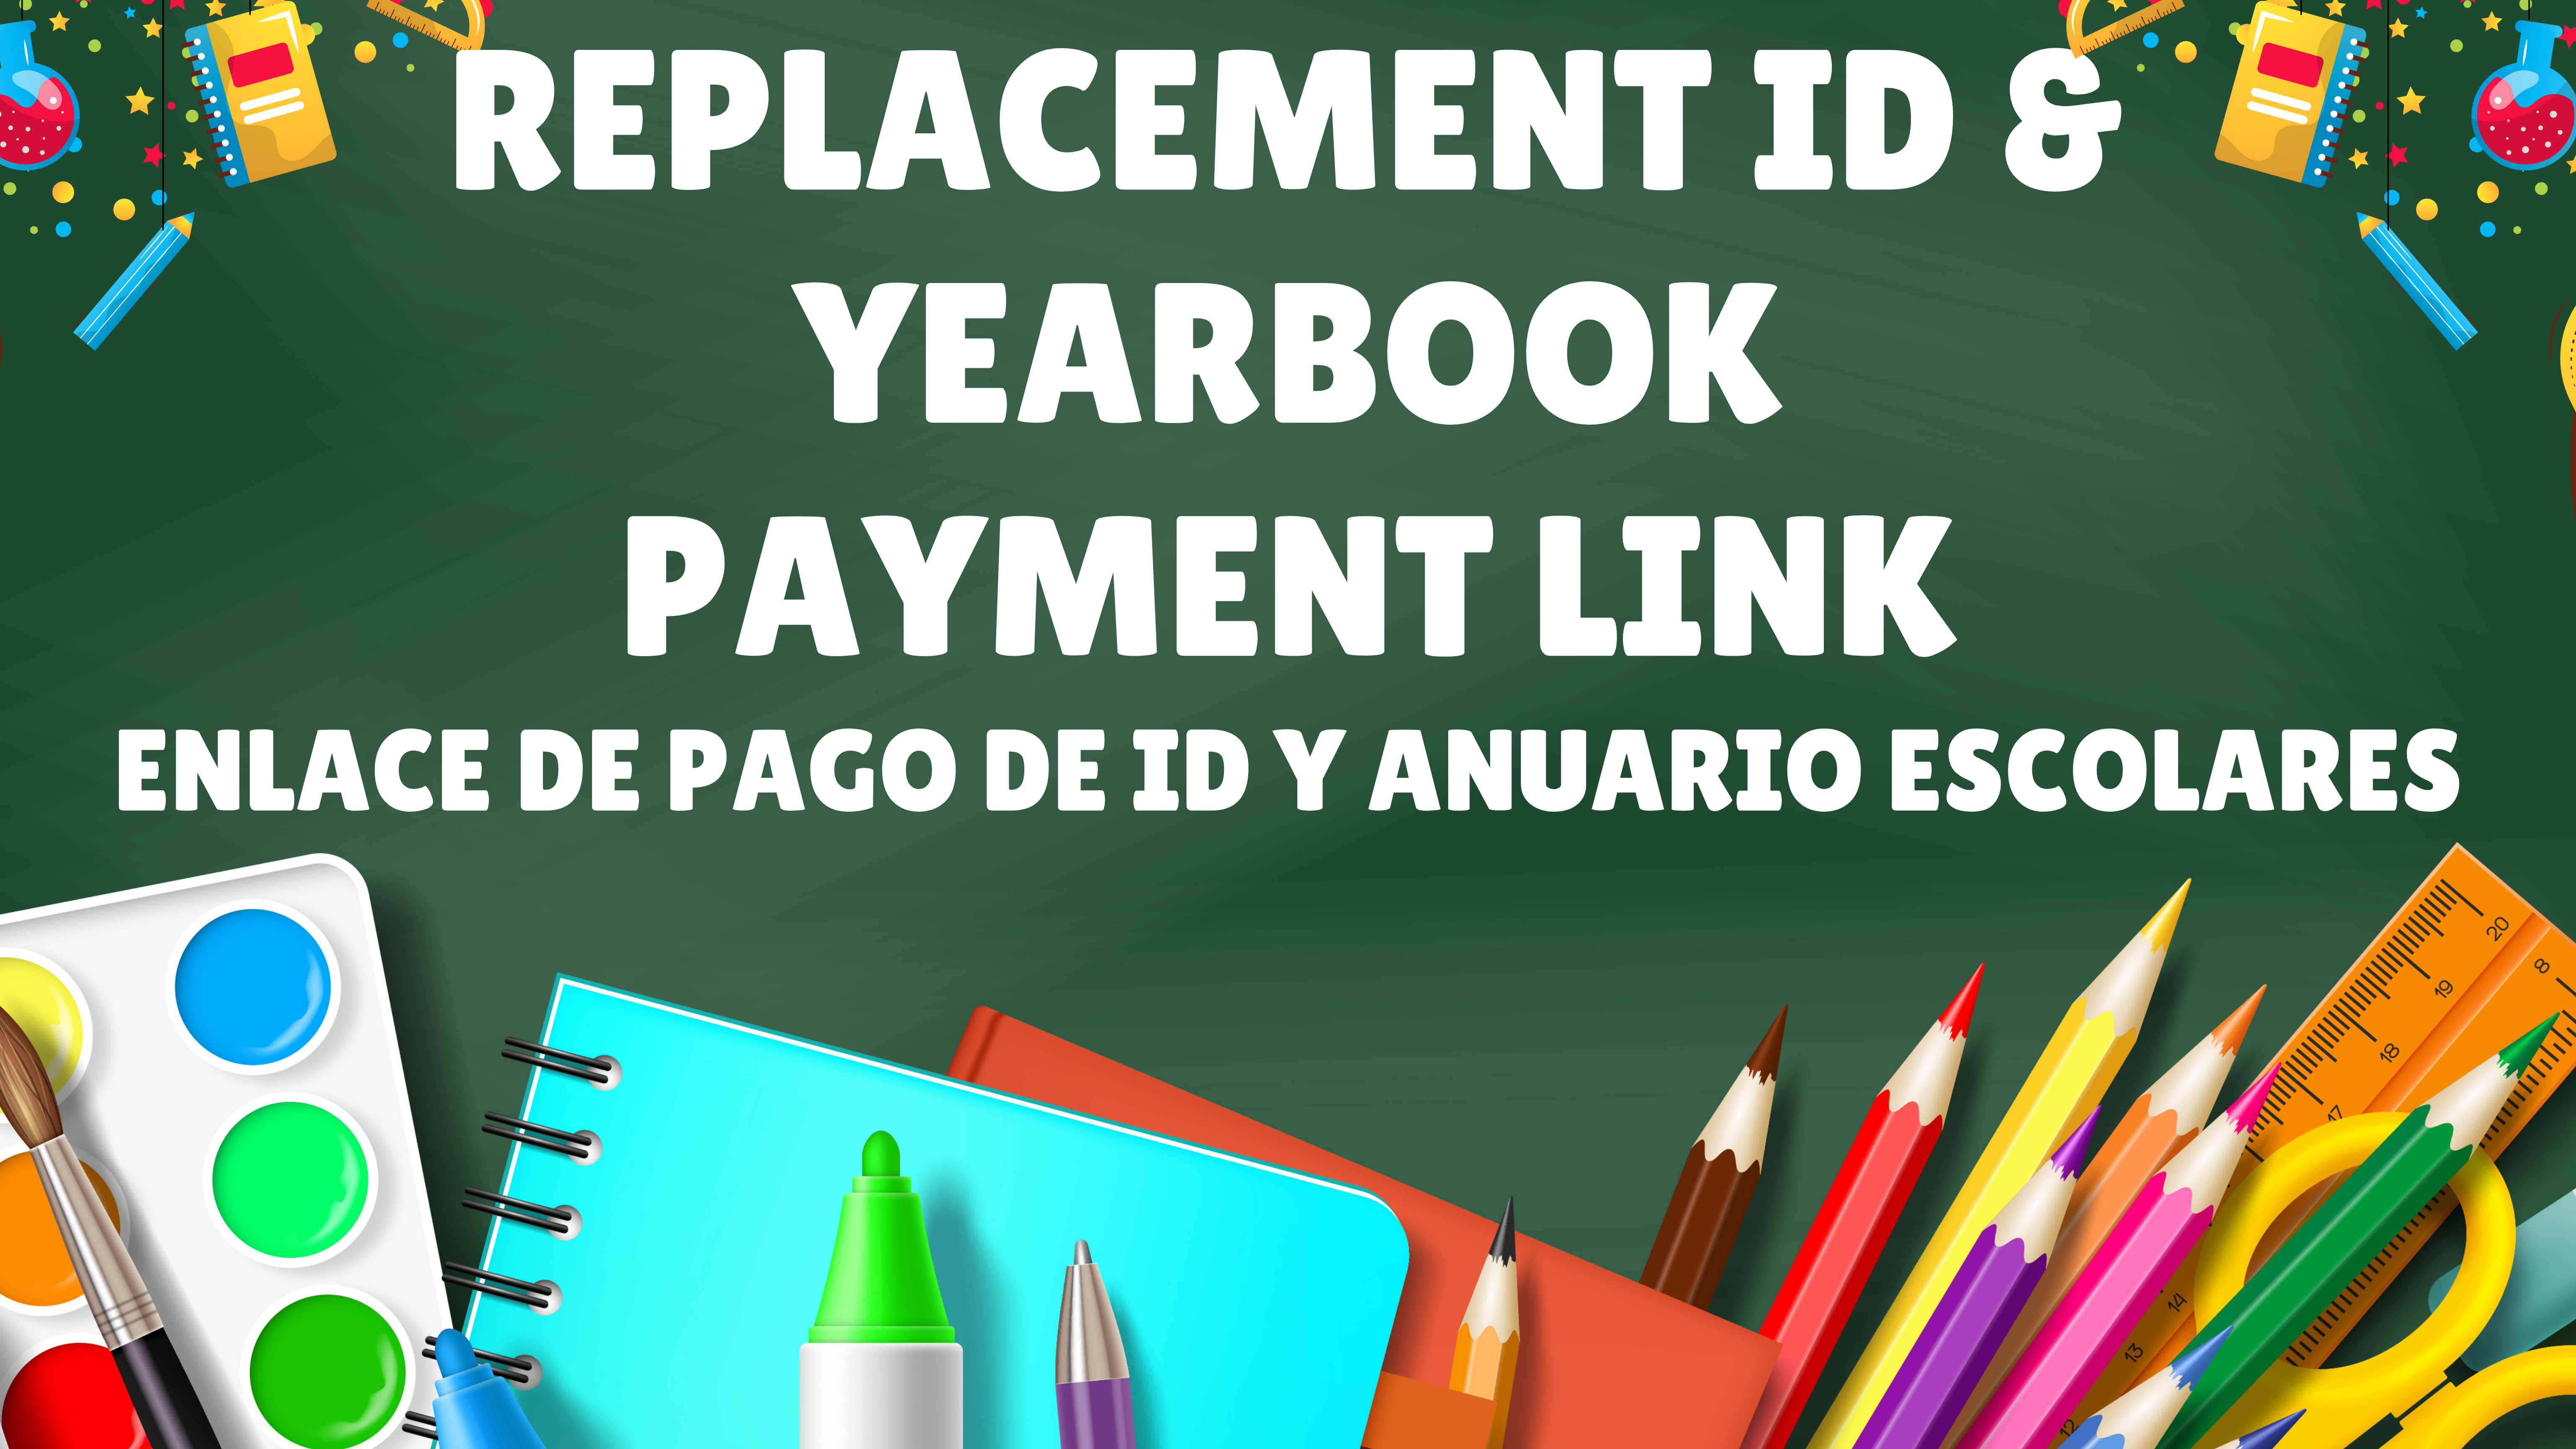 Replacement ID &  yearbook  Payment Link enlace de pago De ID y anuario EScolares